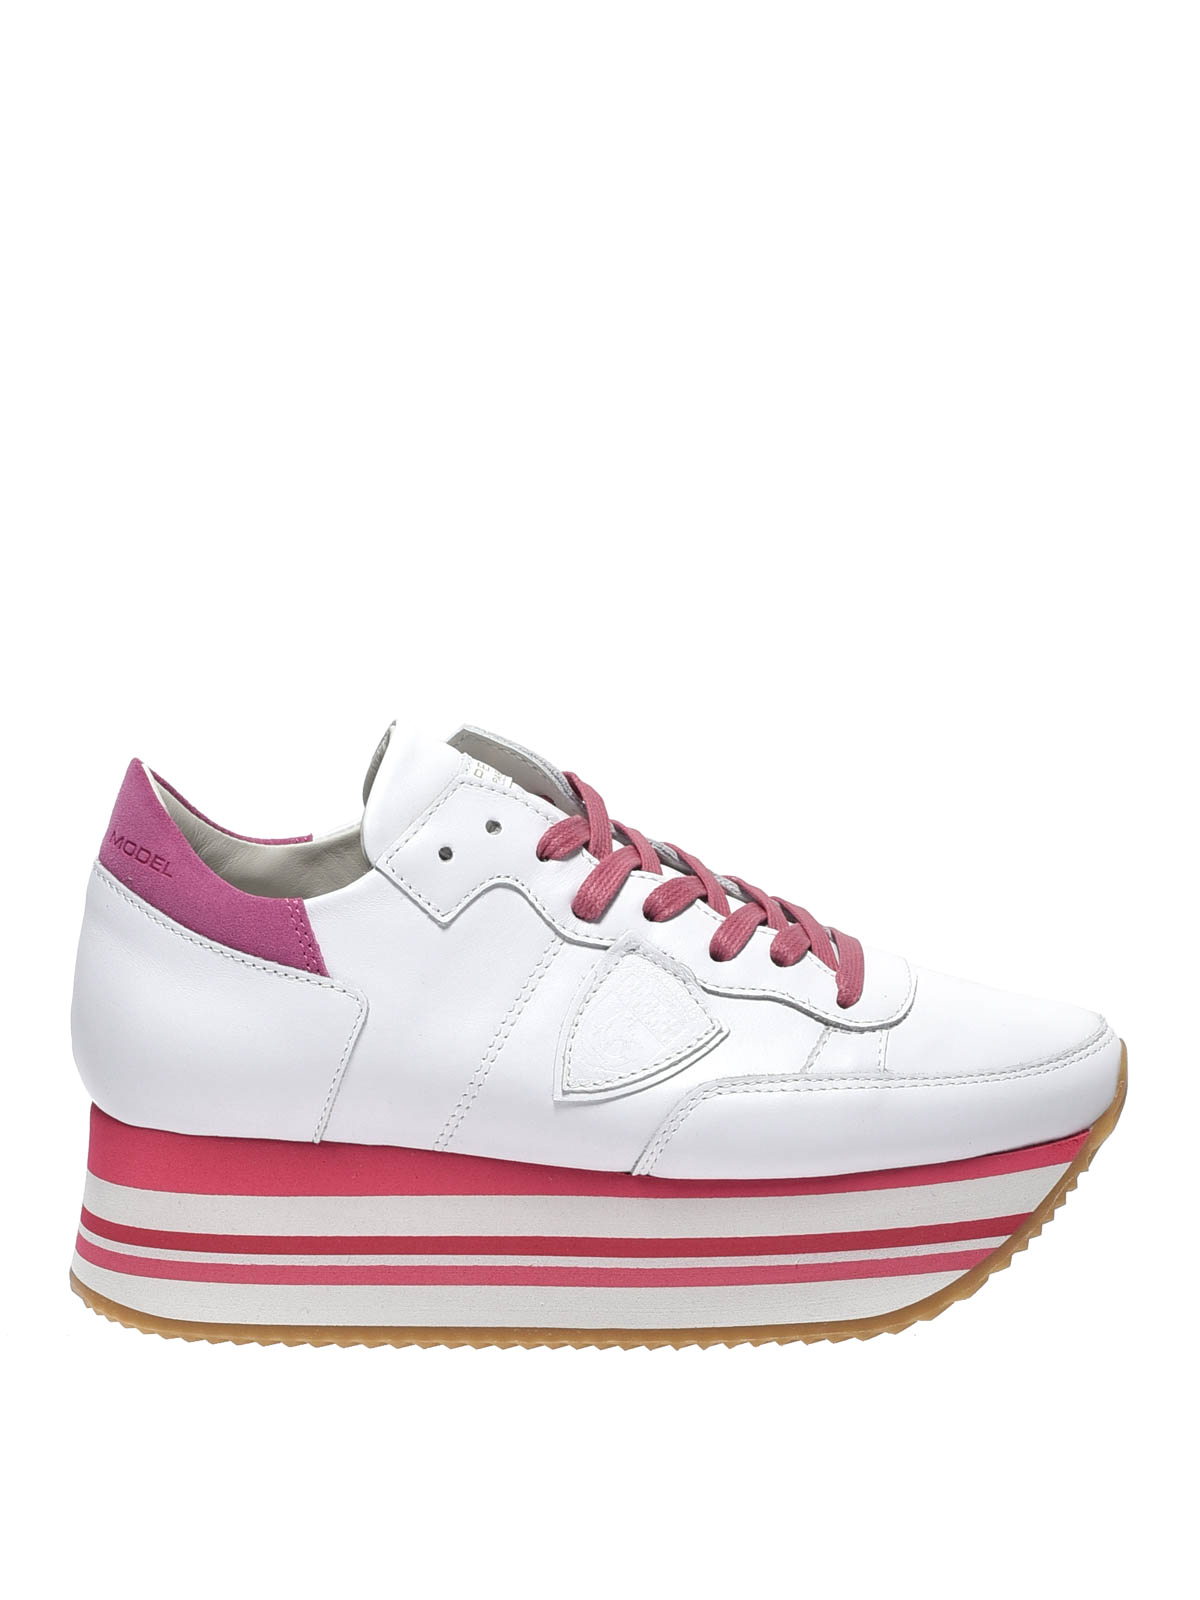 Philippe Model - Sneaker Eiffel in pelle bianche e rosa - sneakers -  EEILDV005